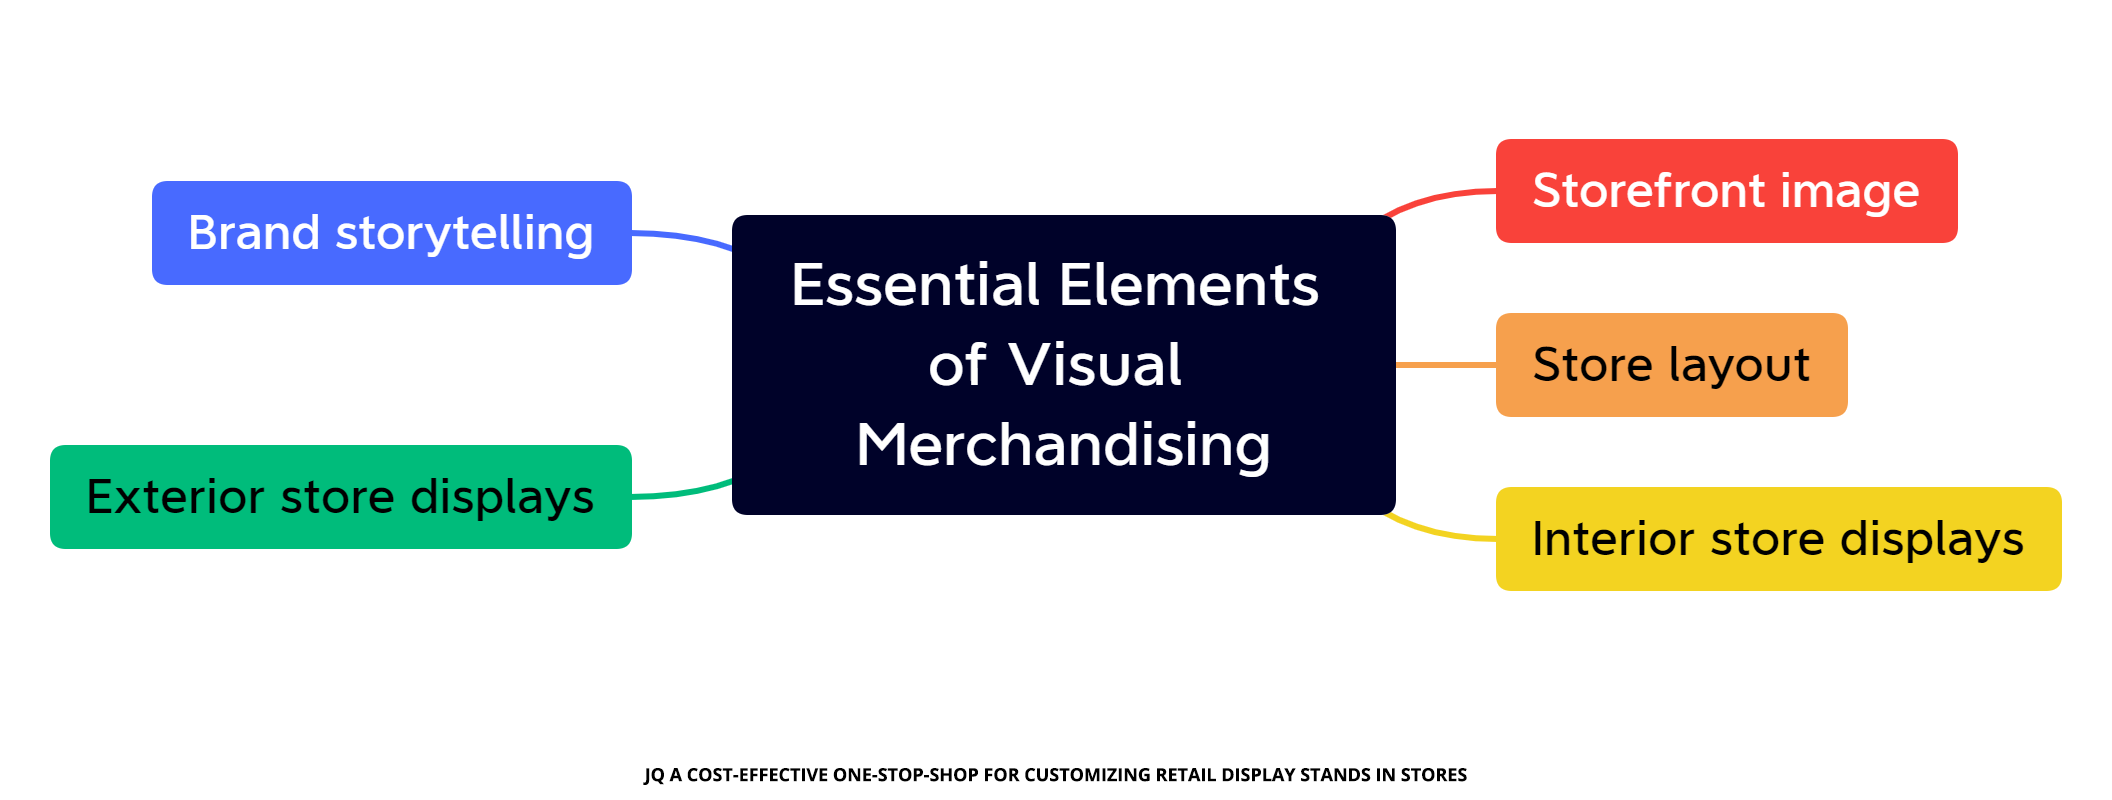 Elementos esenciales del visual merchandising minorista